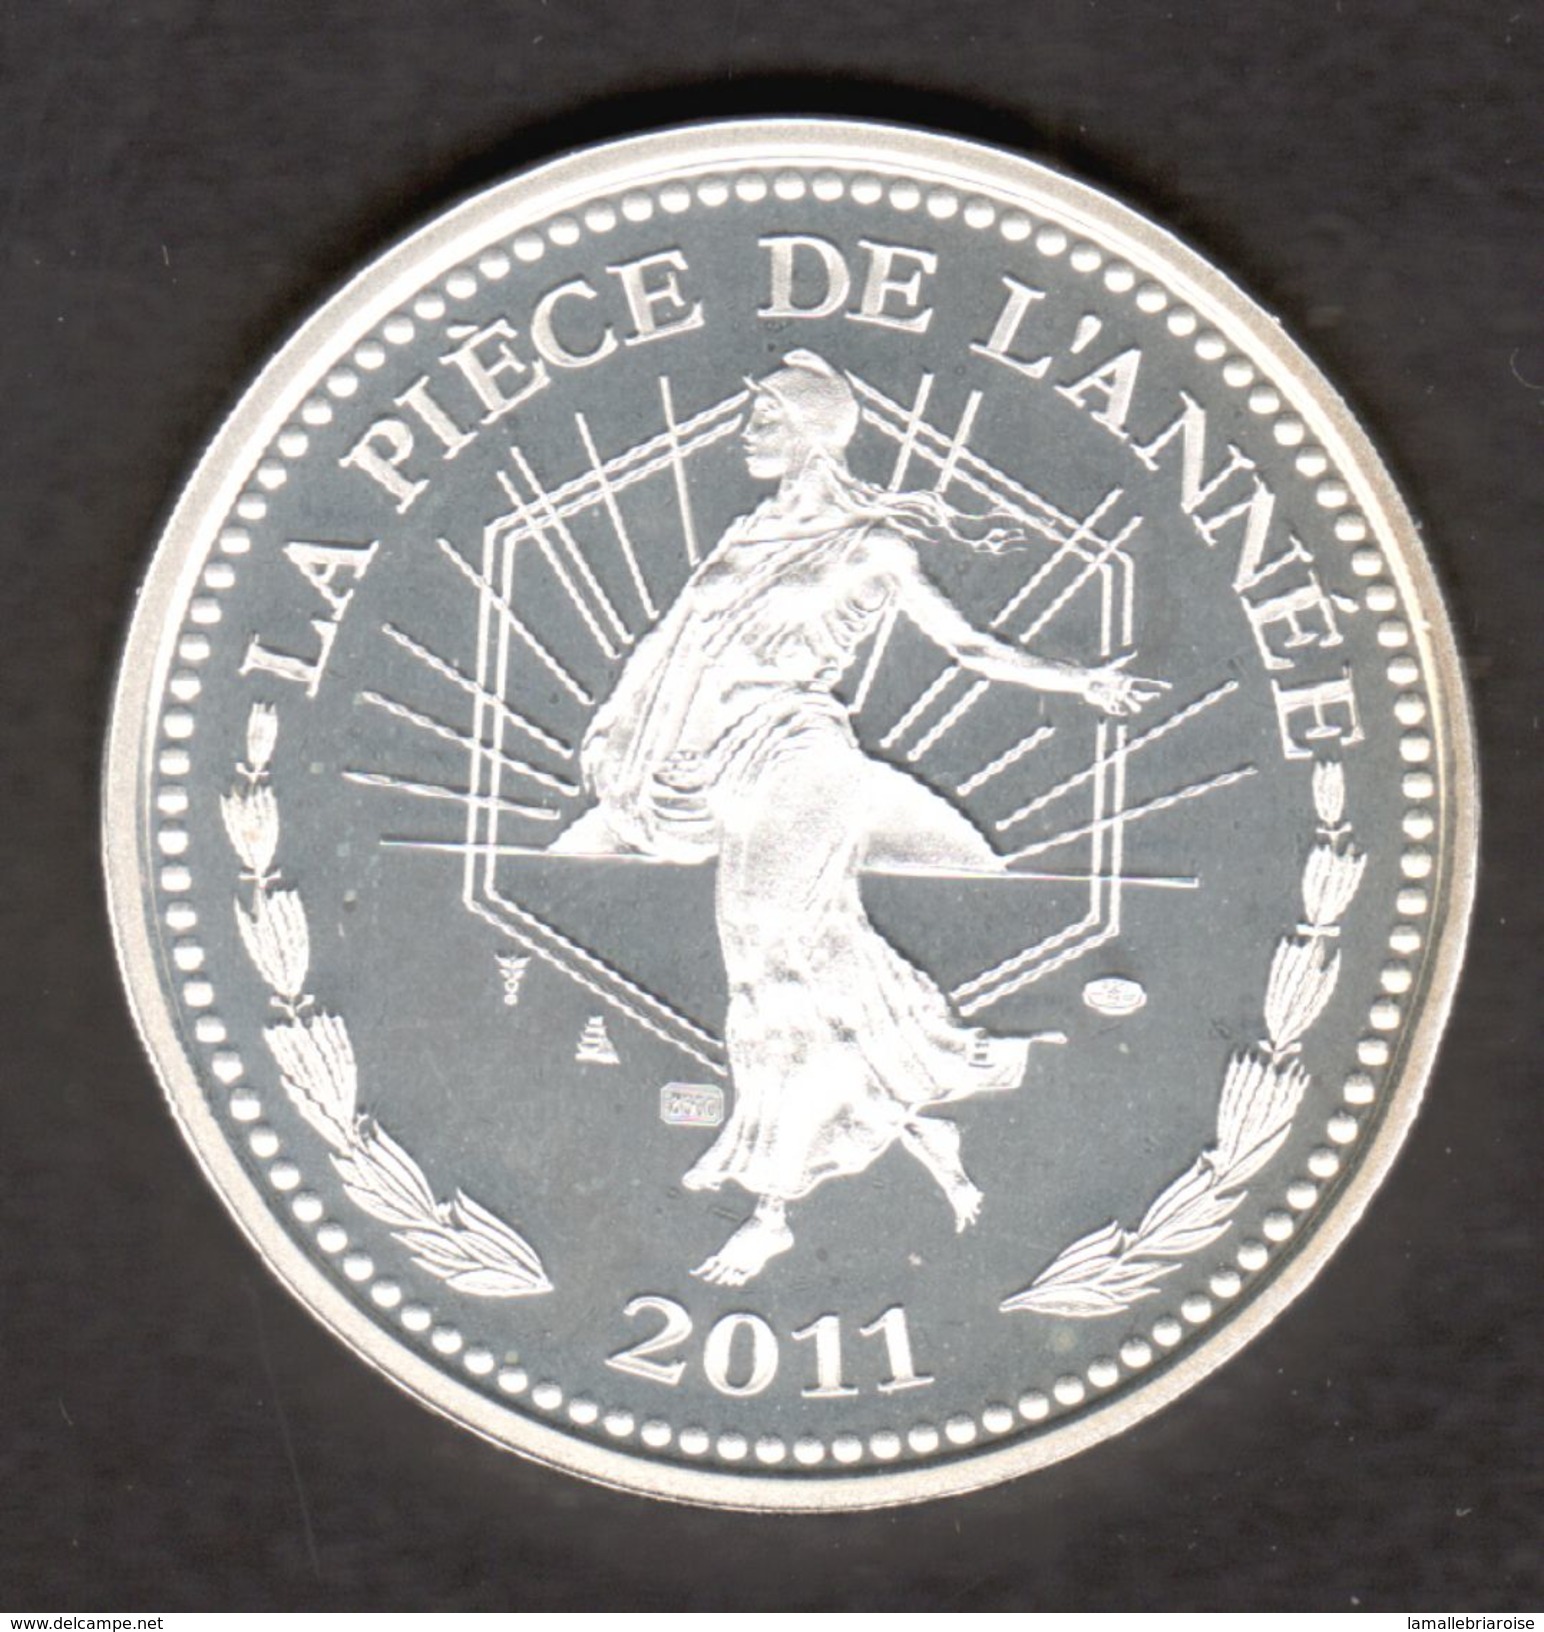 La Piece De L'annee 2011, IN MEMORIAM, Notre Dame De Reims, Marie Curie, TGV, Argent 900/00 - Unclassified